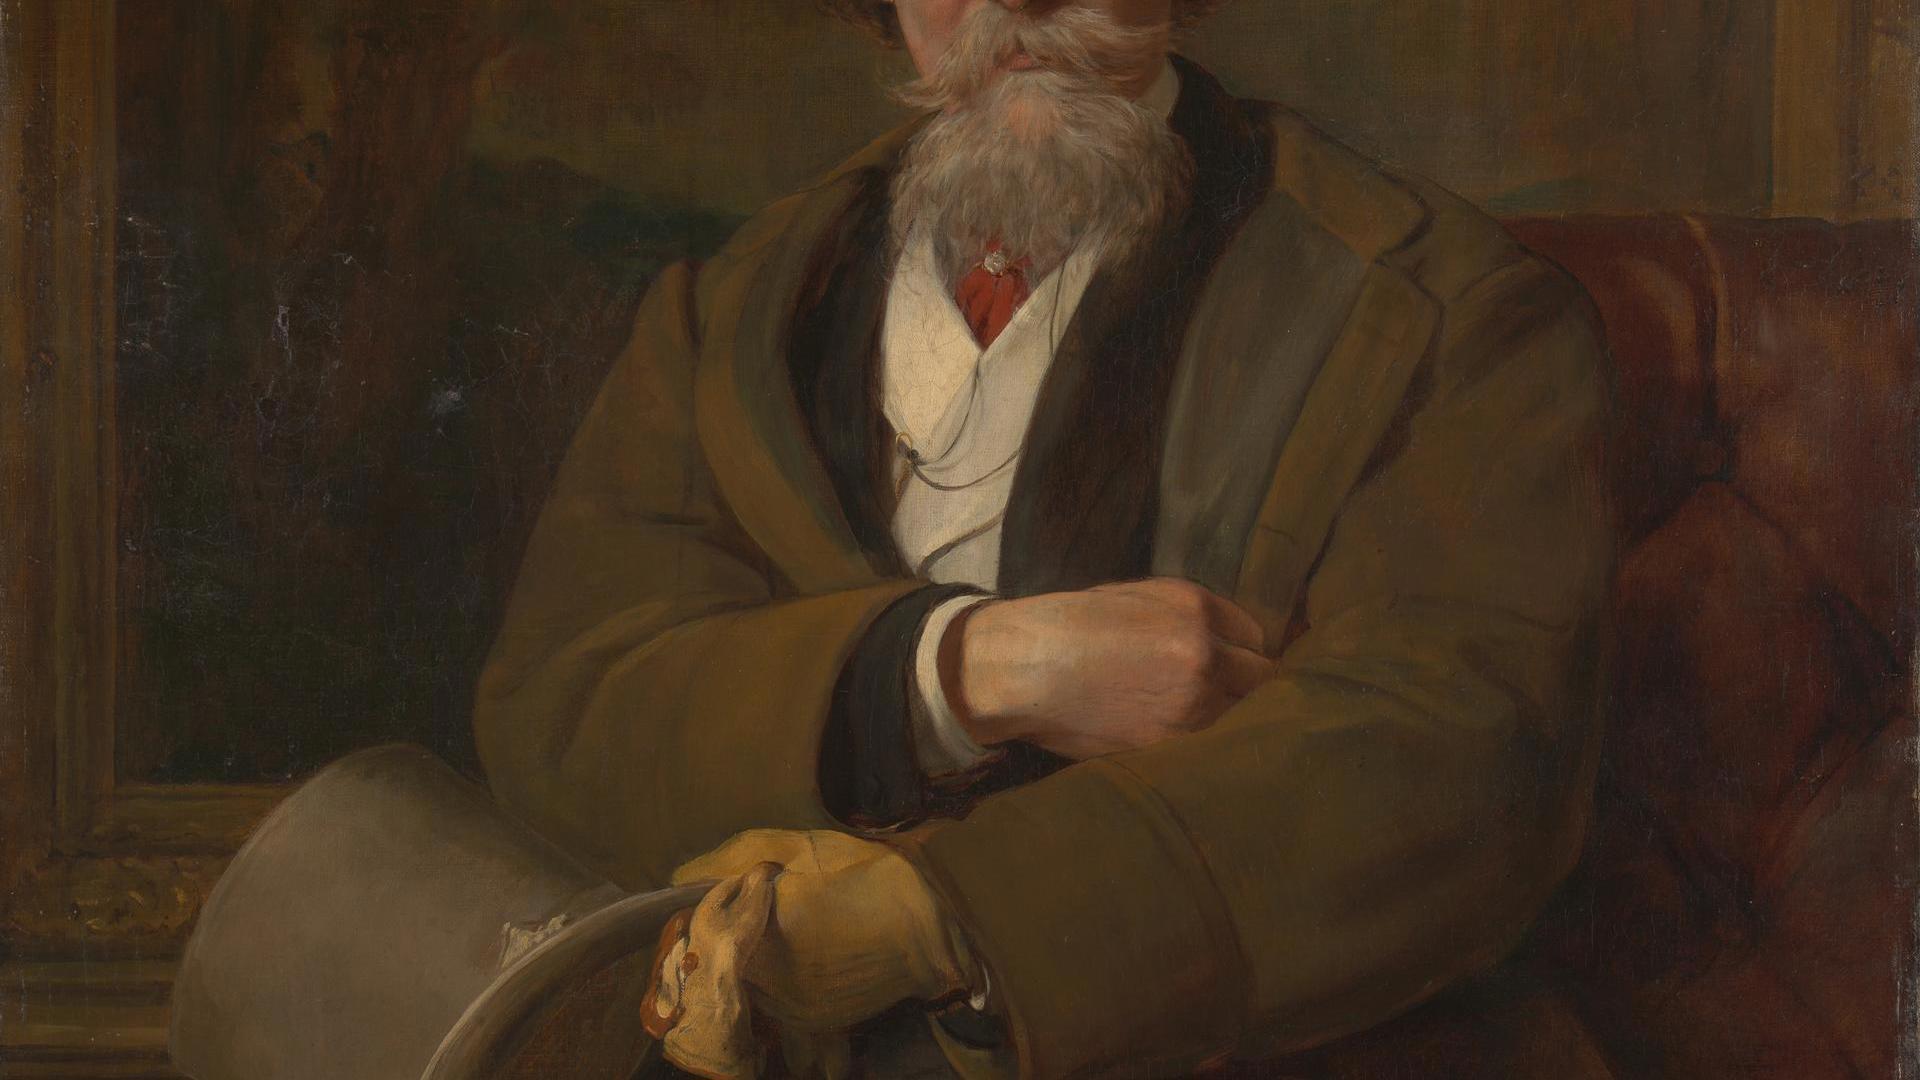 Portrait of Martin Colnaghi by John Callcott Horsley